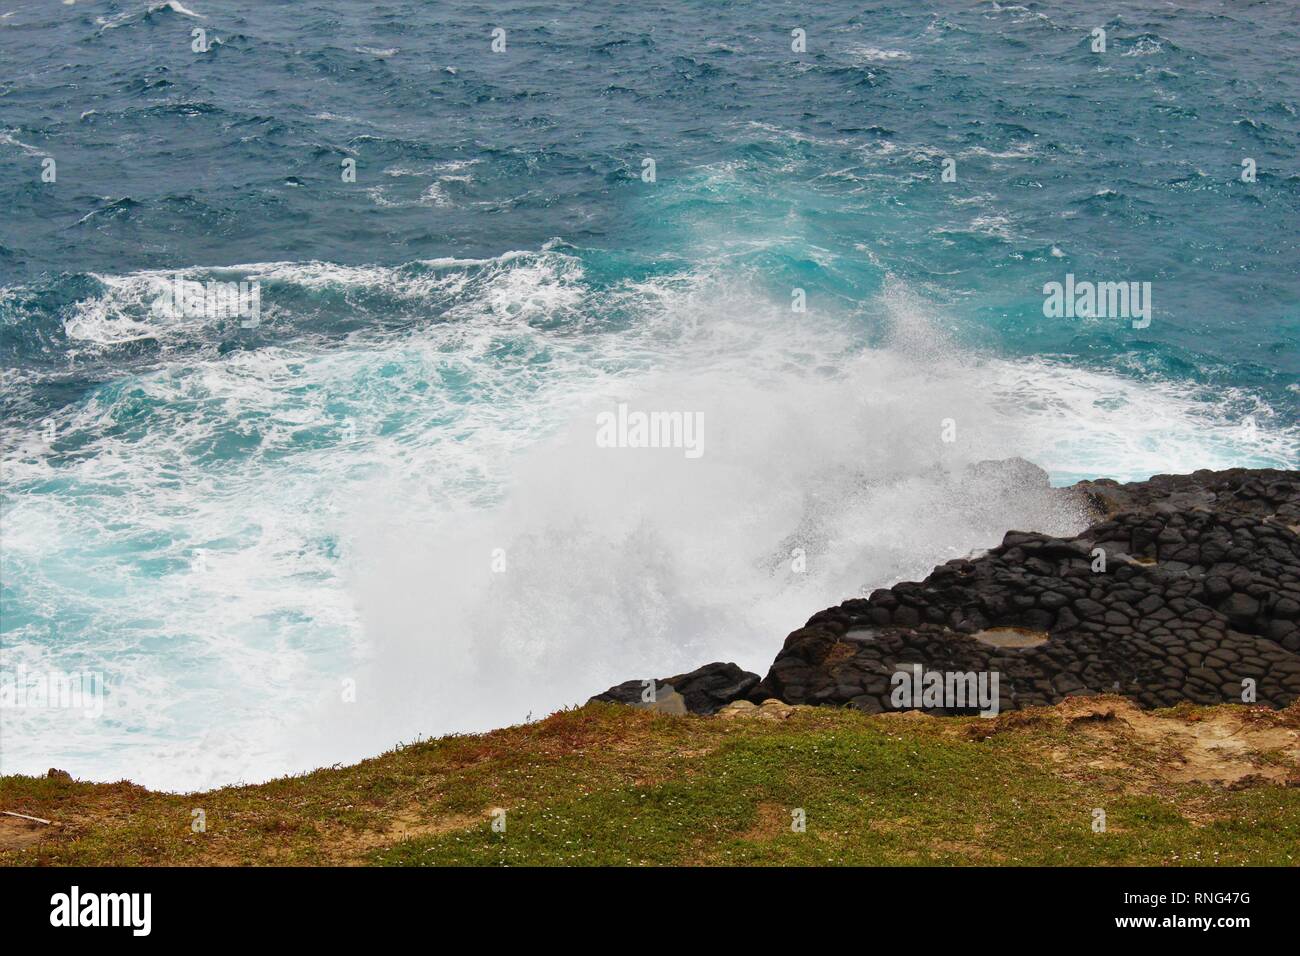 Waves crashing against rocks on the south coast of Australia Stock Photo